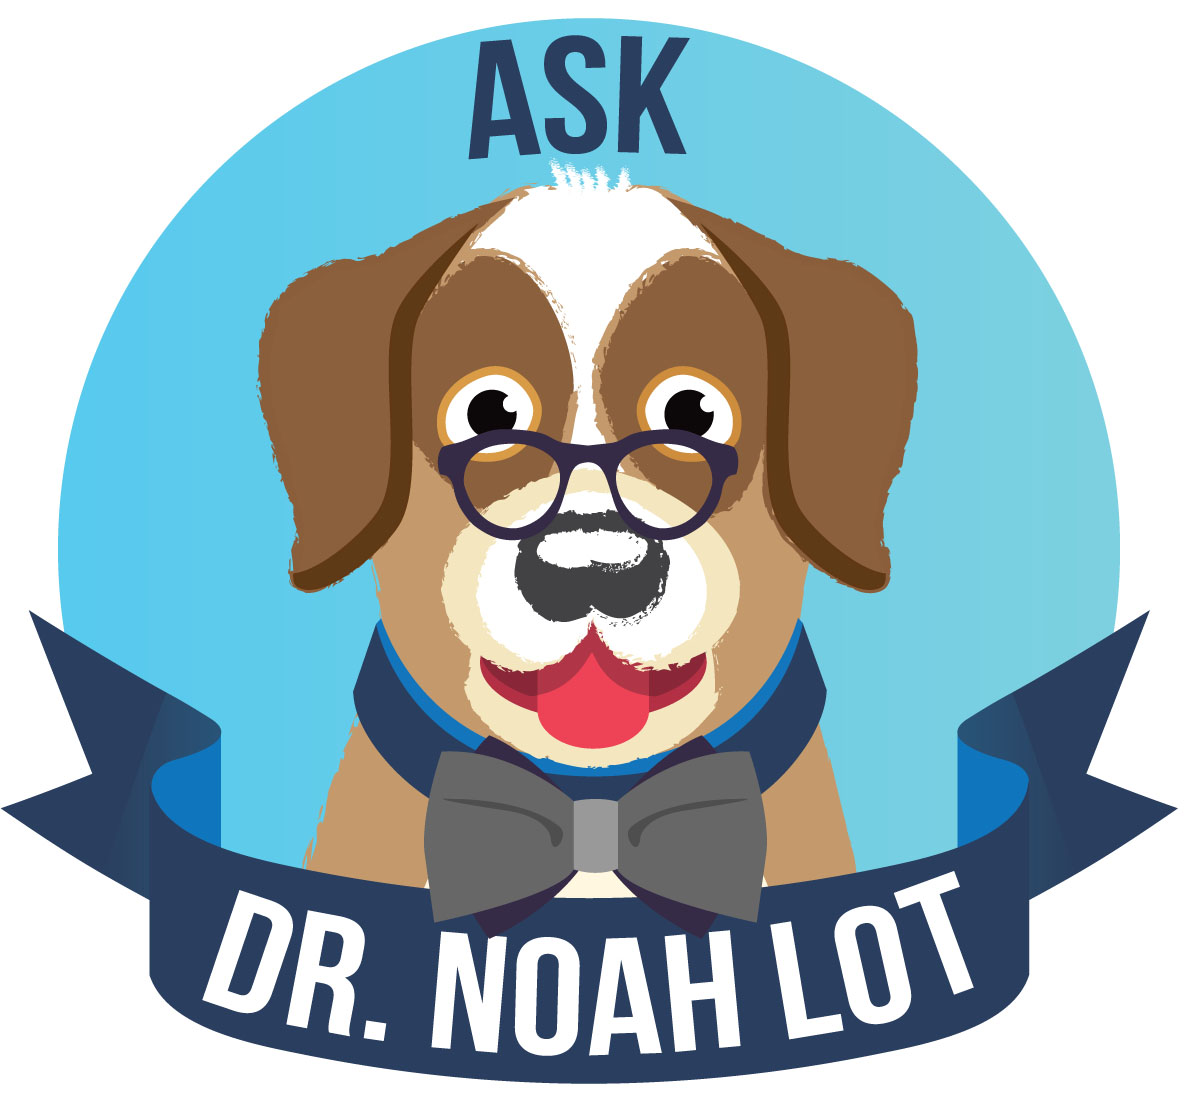 Image: Introducing Dr. Noah Lot